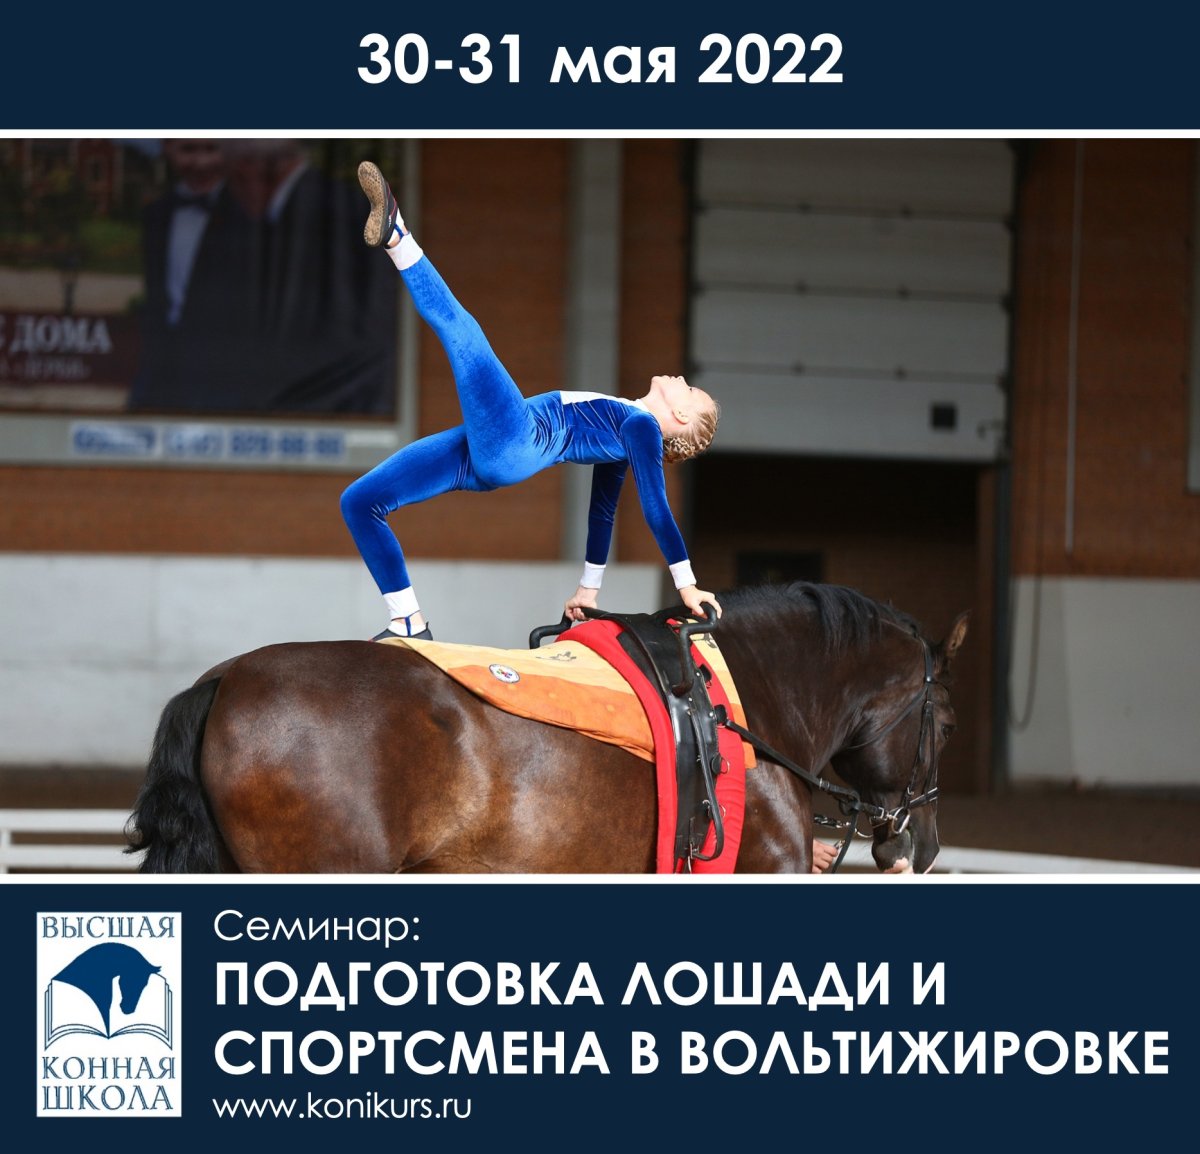 30-31 мая в Санкт-Петербурге состоится семинар: "Подготовка лошади и спортсмена в вольтижировке"!